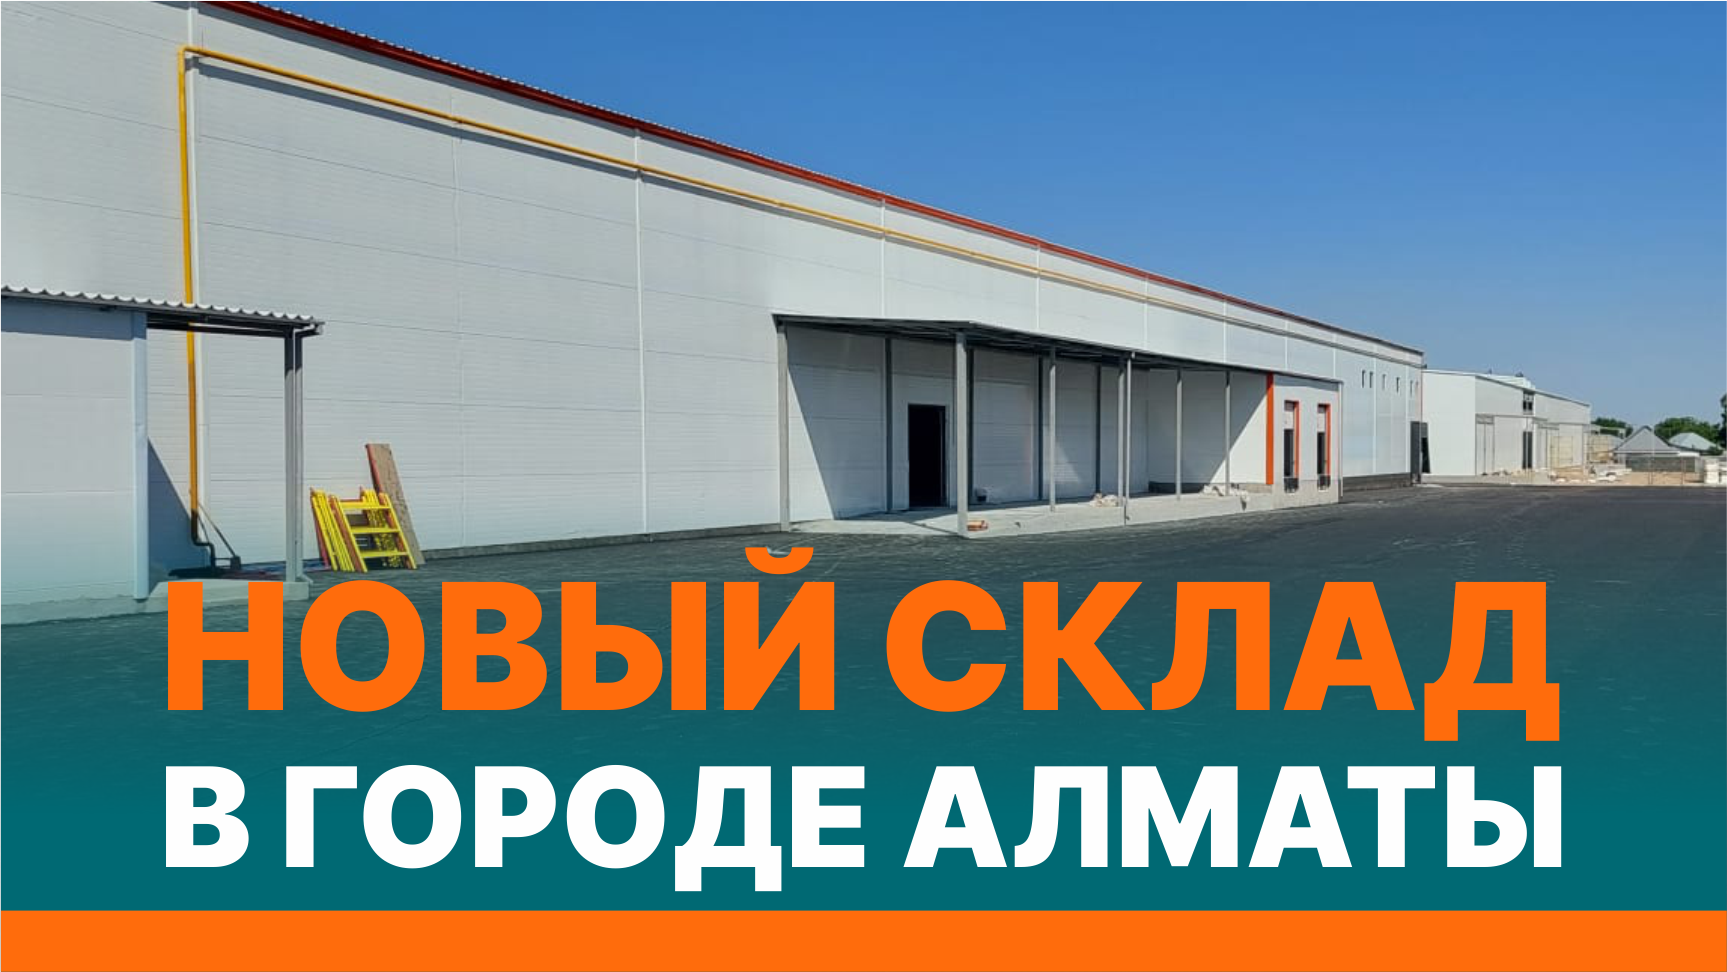 Открытие складов в городе Алматы